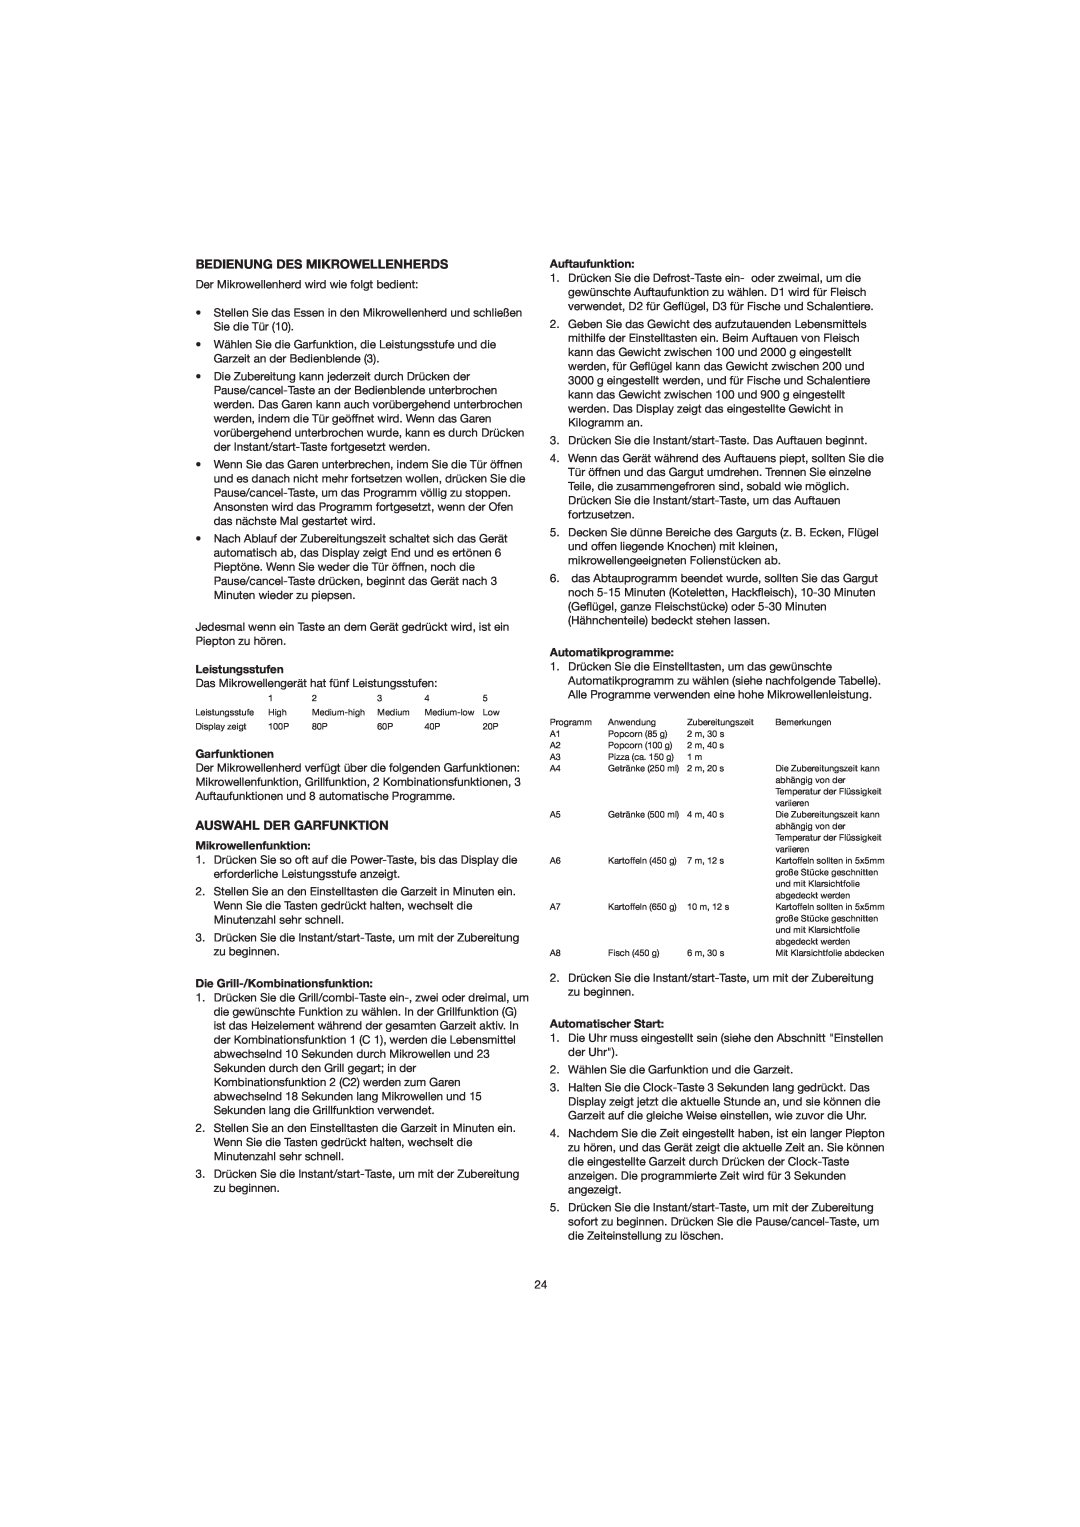 Melissa 753-082/083 manual Bedienung Des Mikrowellenherds, Auswahl Der Garfunktion, Leistungsstufen, Garfunktionen 